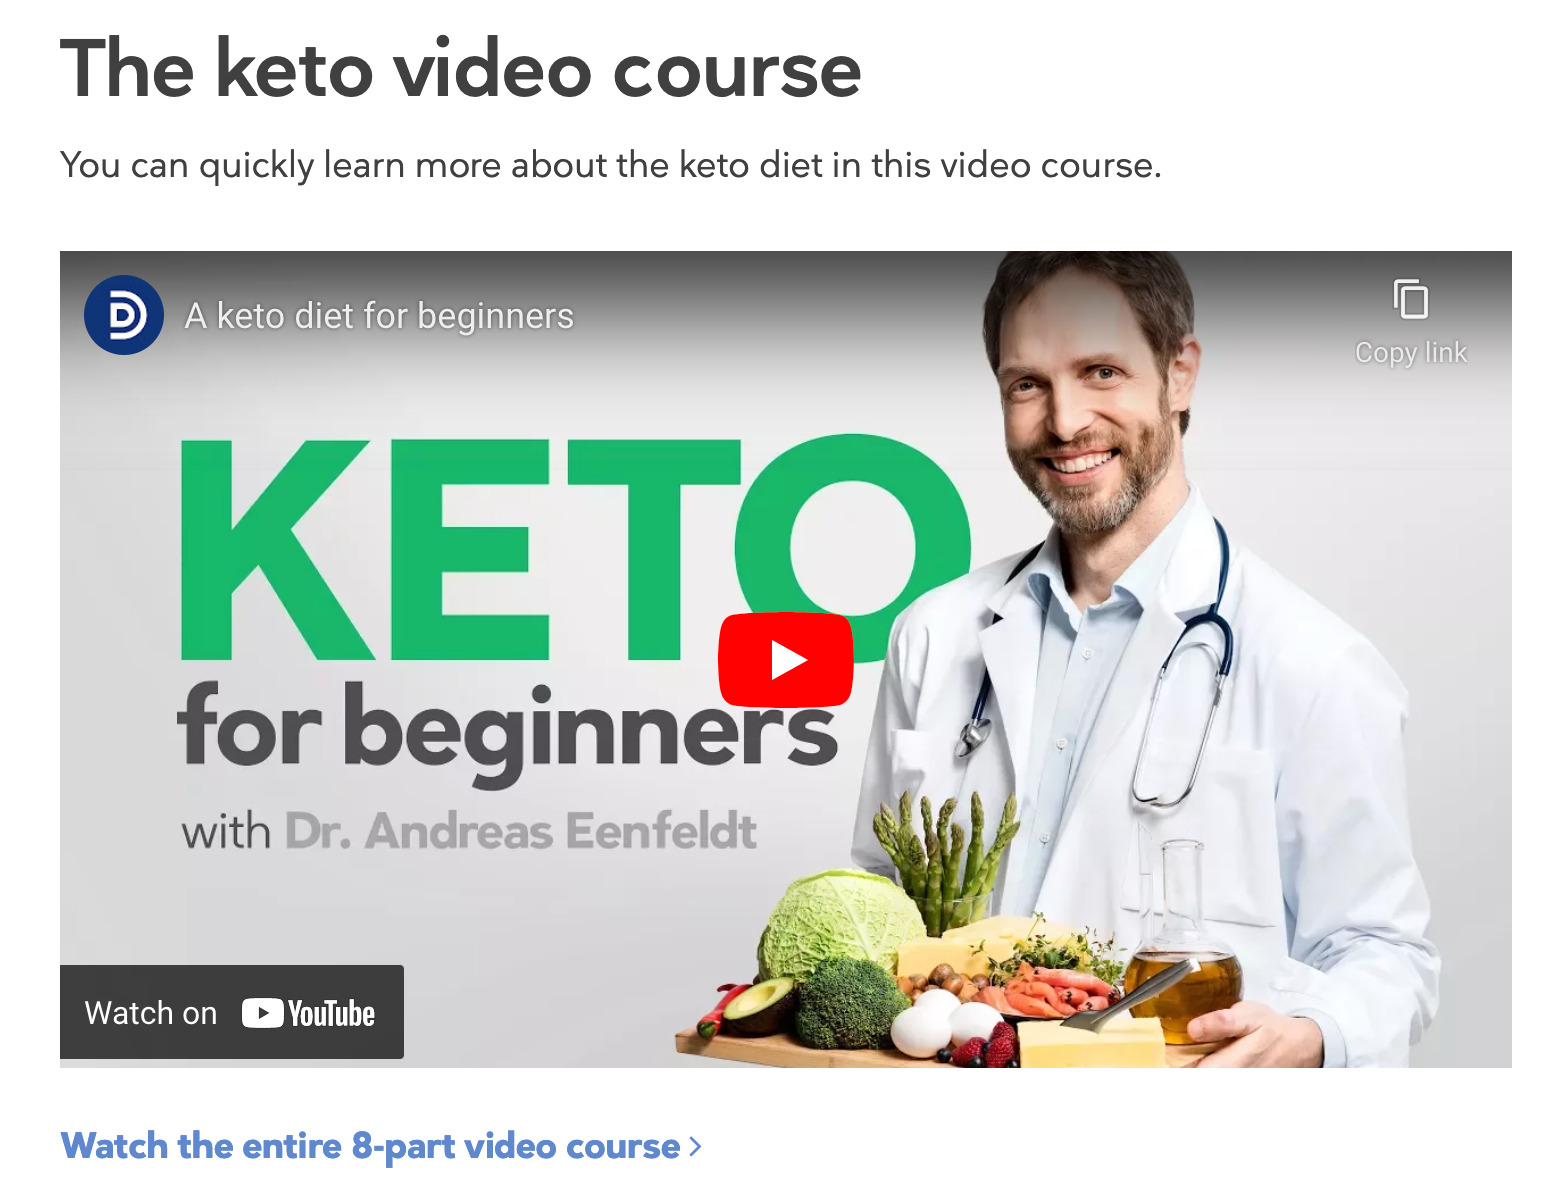 Yeni başlayanlar için keto diyeti hakkında video kursu